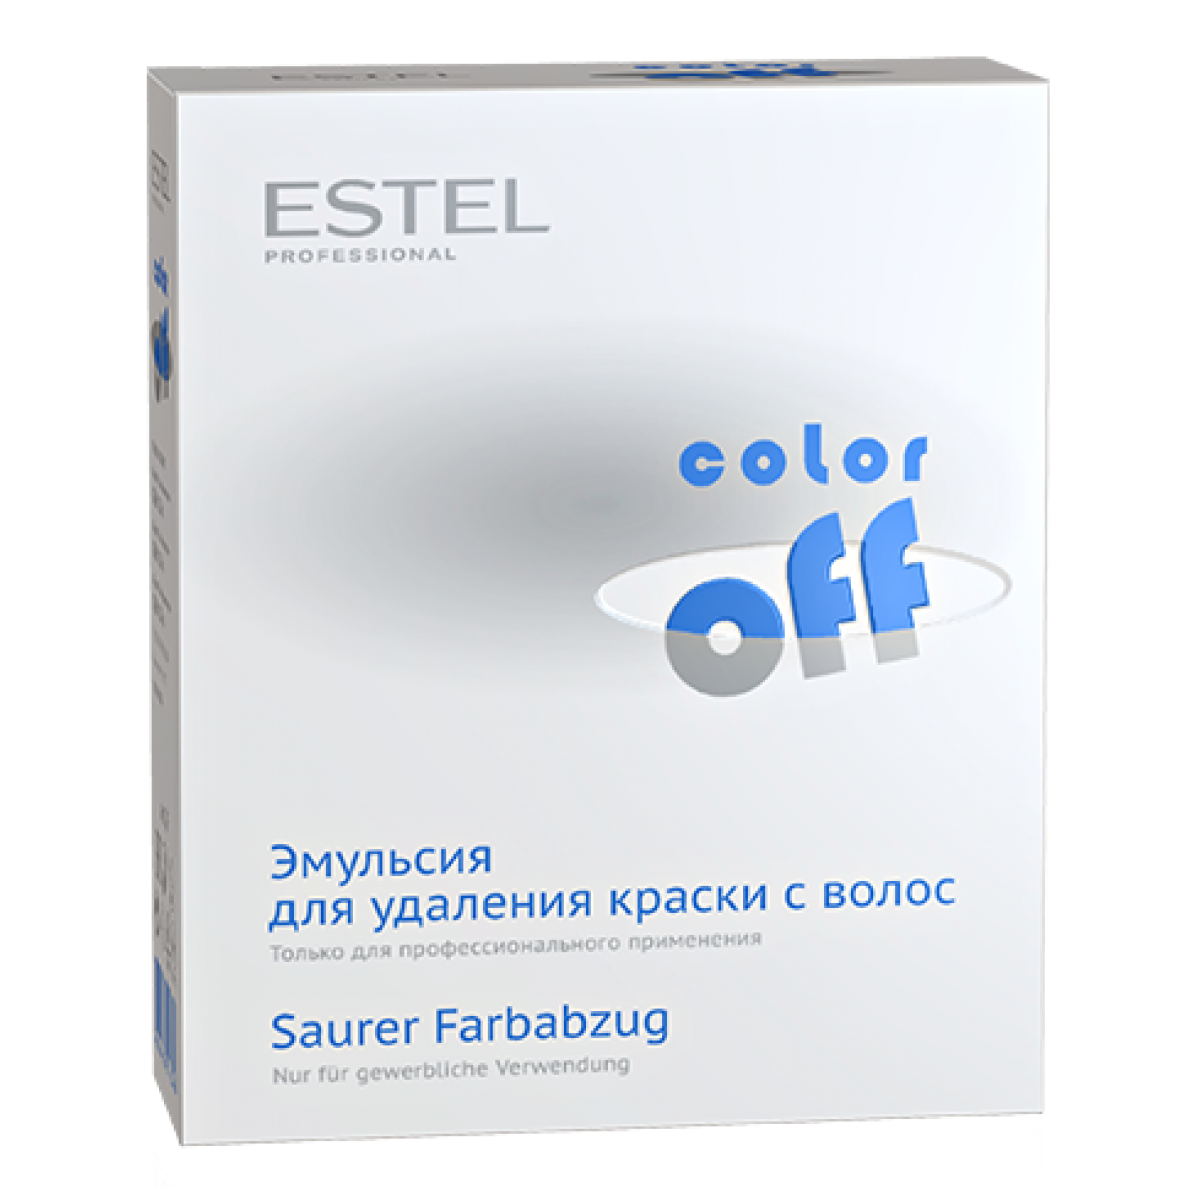 Estel Color off. Эстель Color off. Estel professional эмульсия для удаления краски с волос Color off. Смывка Эстель колор.